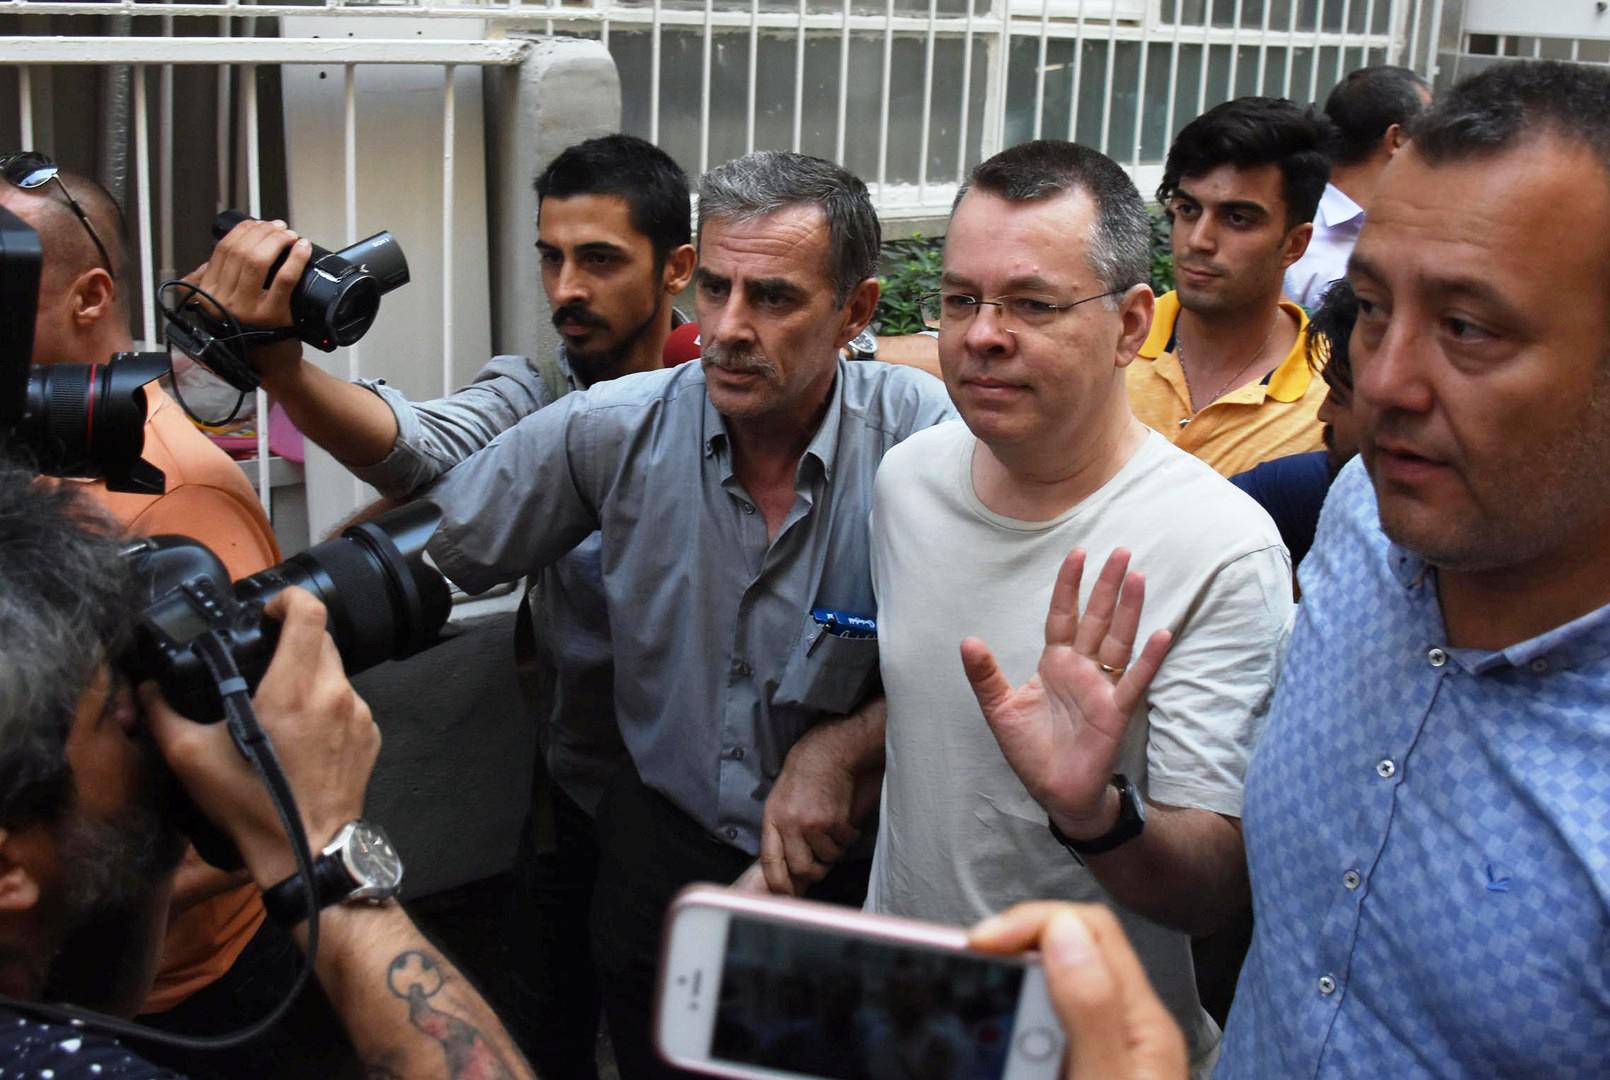 الشرطة التركية تقتاد القس الأميركي آندرو برانسون إلى مقر اقامته الجبرية